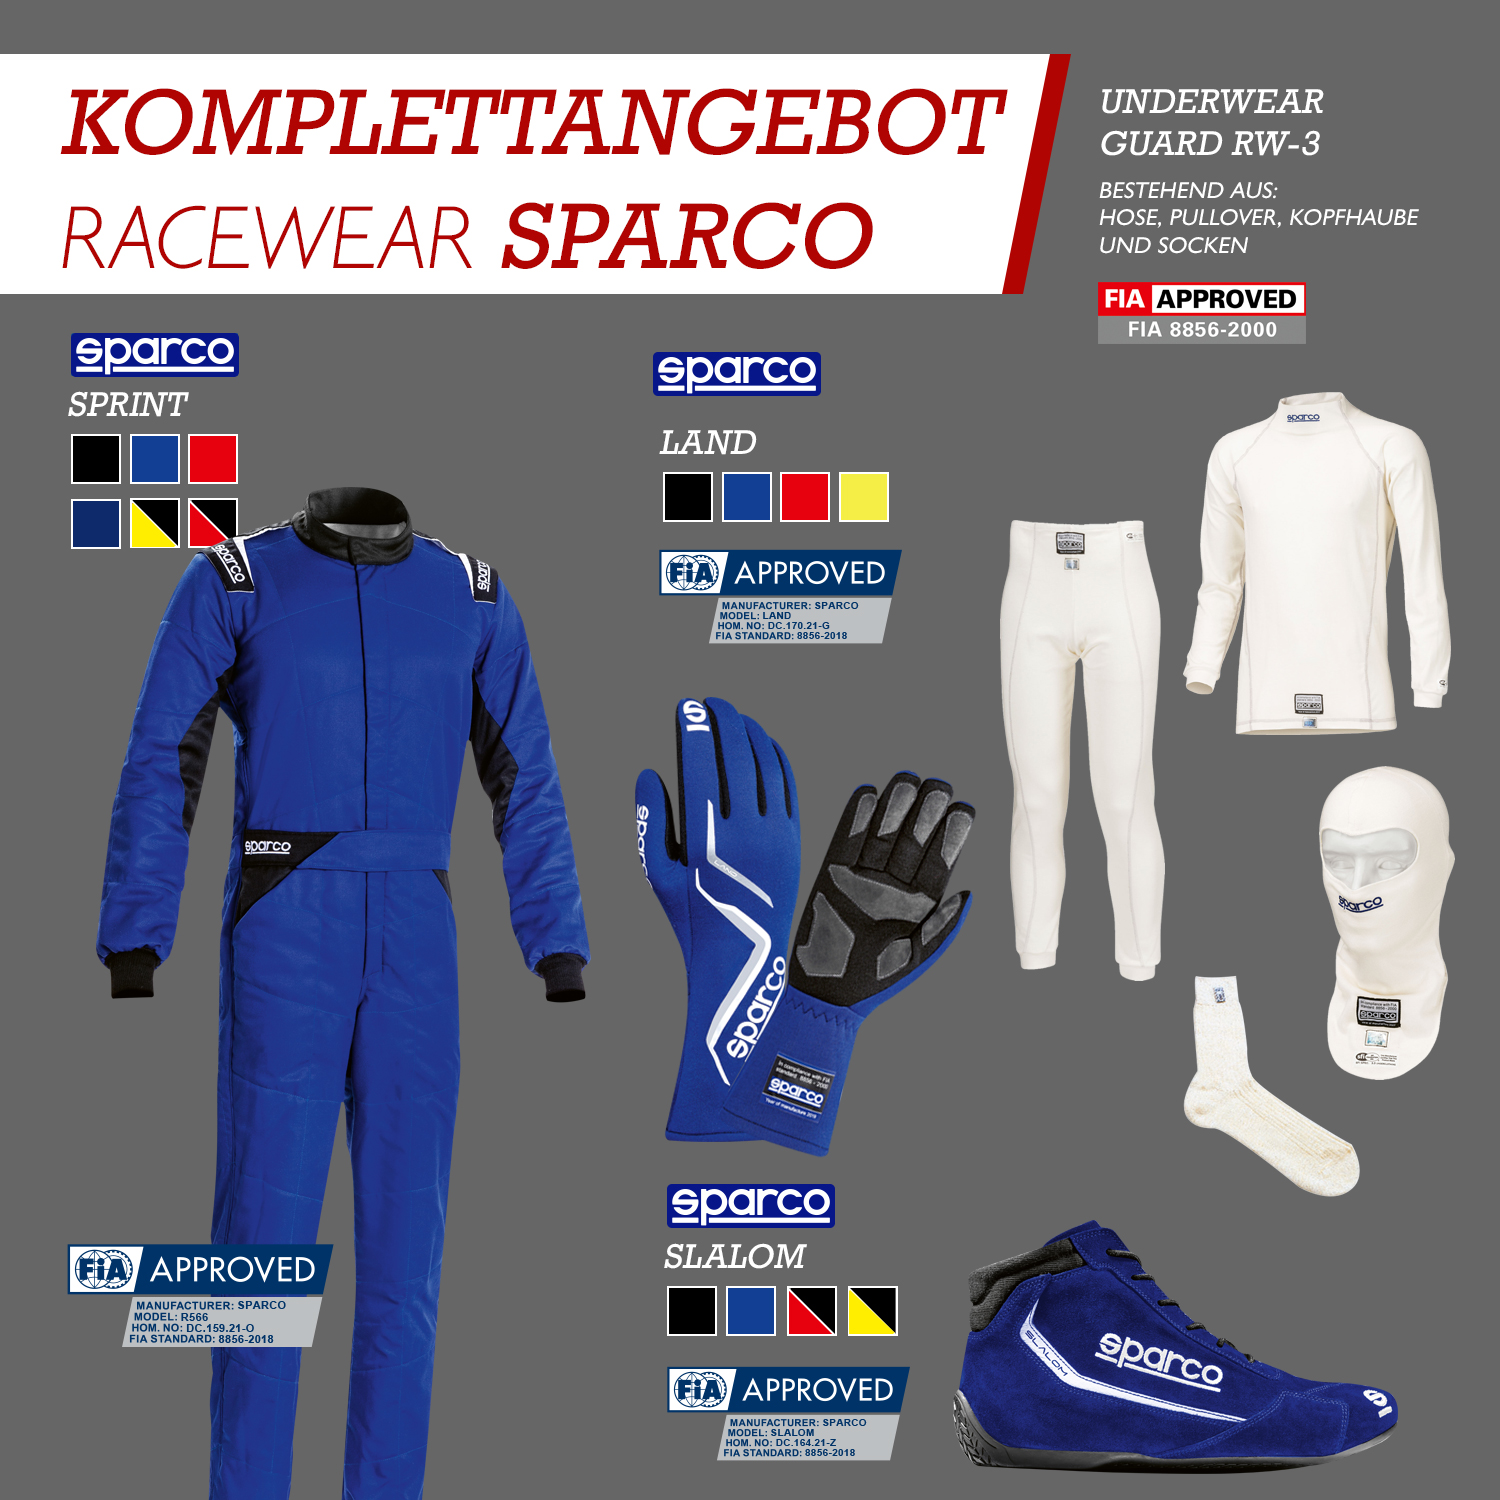 Komplettangebot Racewear | Sparco